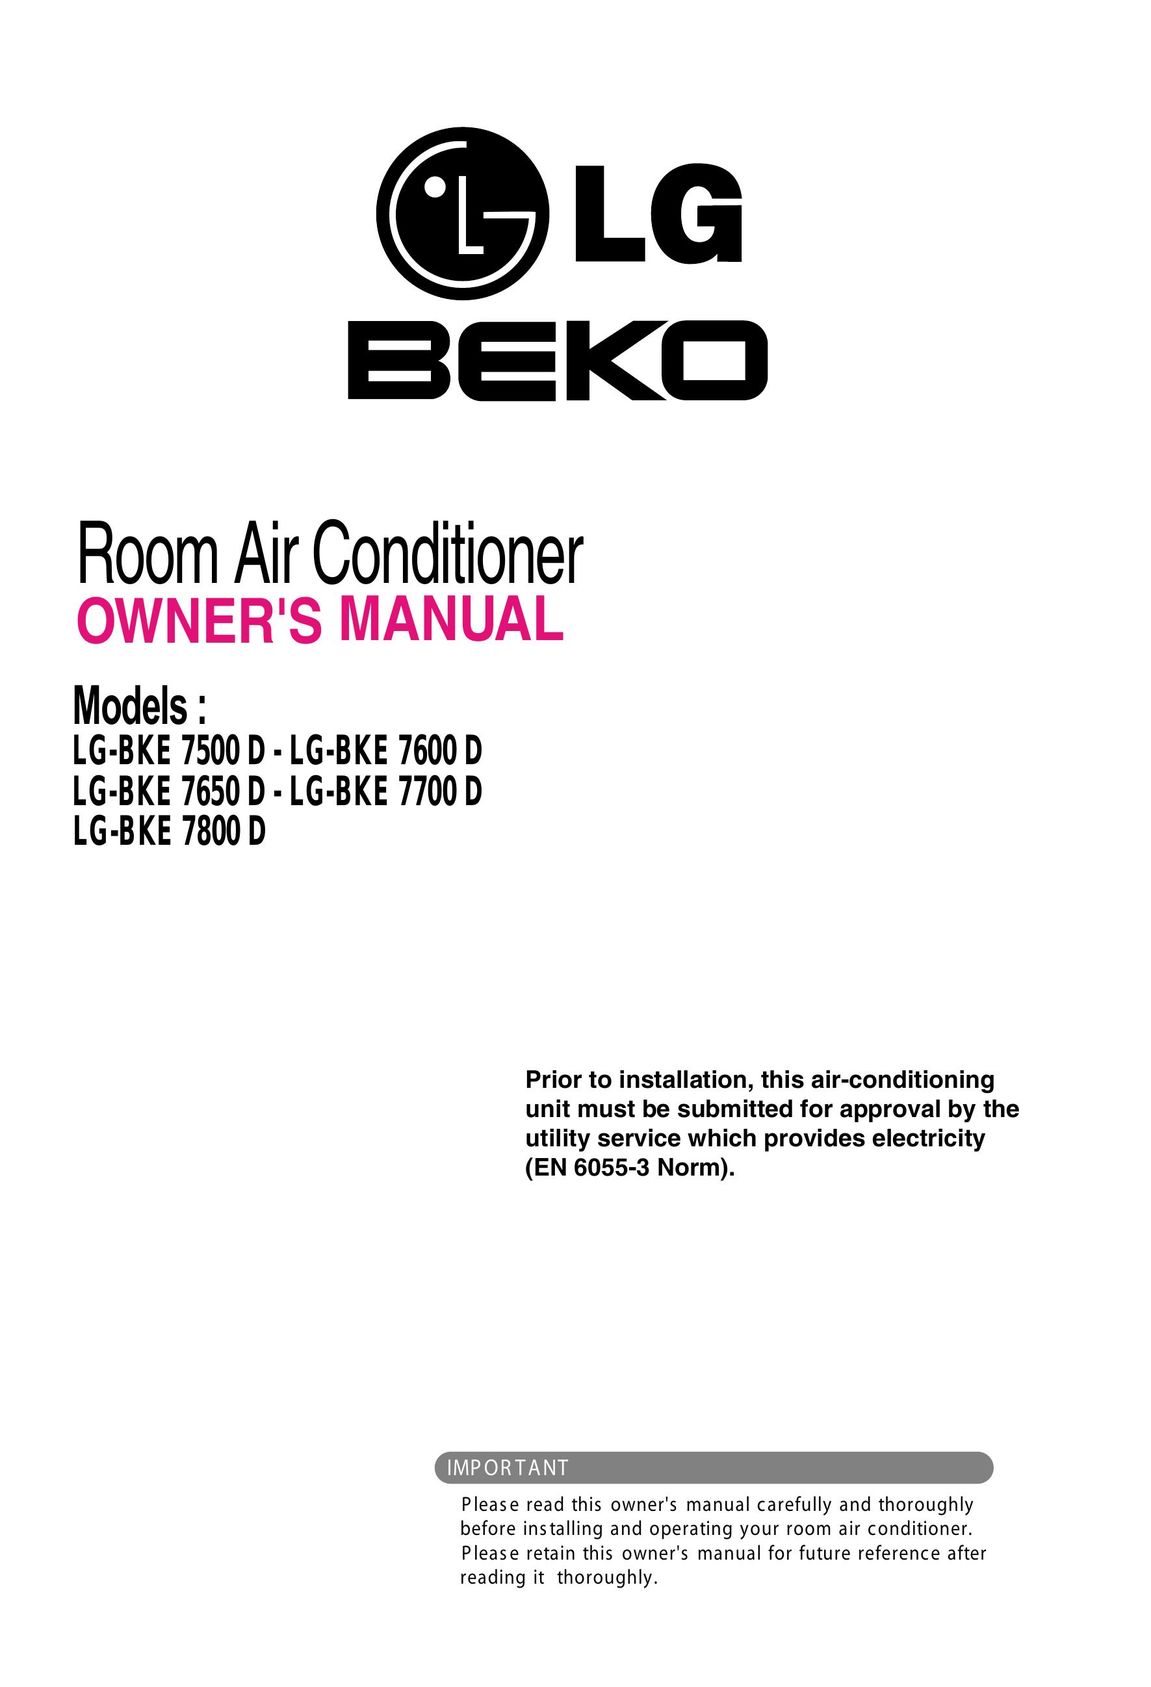 Beko LG-BKE 7800D Air Conditioner User Manual